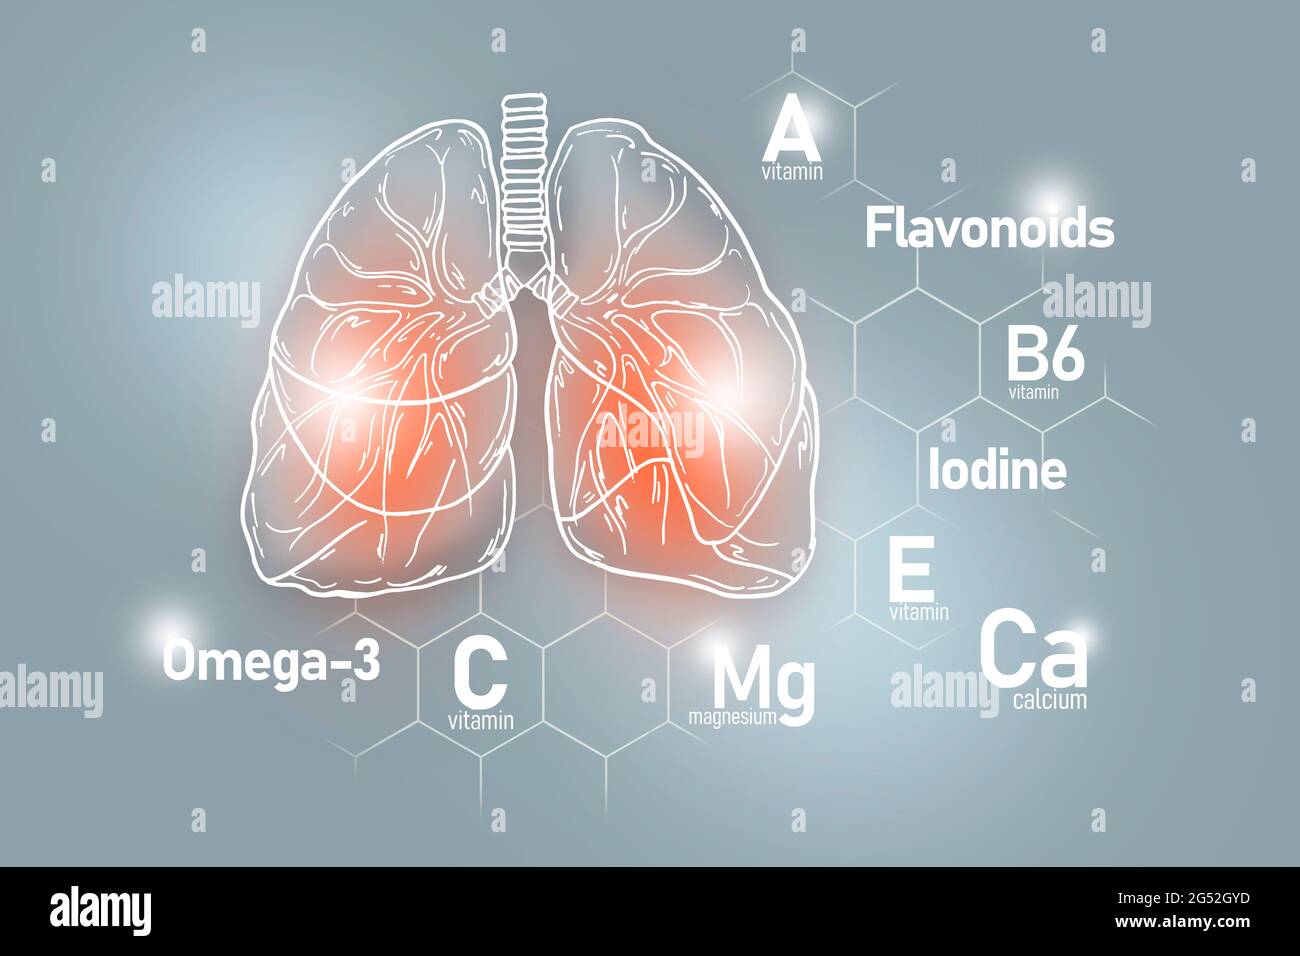 Nutrienti essenziali per la salute dei polmoni, tra cui Omega-3, flavonoidi, magnesio, iodio. Insieme di disegno dei principali organi umani con le vitamine Foto Stock